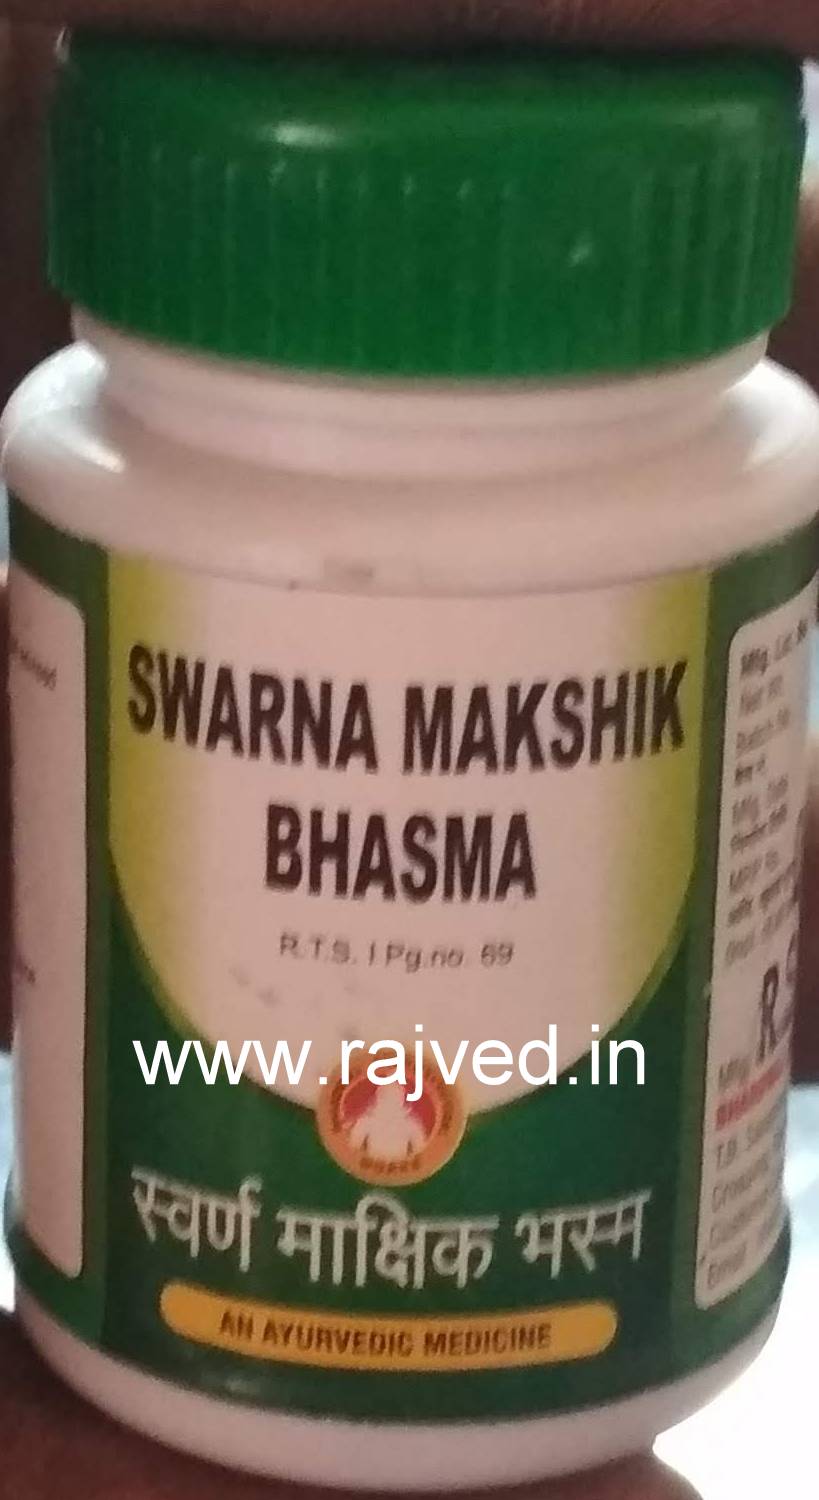 swarna makshik bhasma 100gm upto 15% off bharadwaj pharma indore